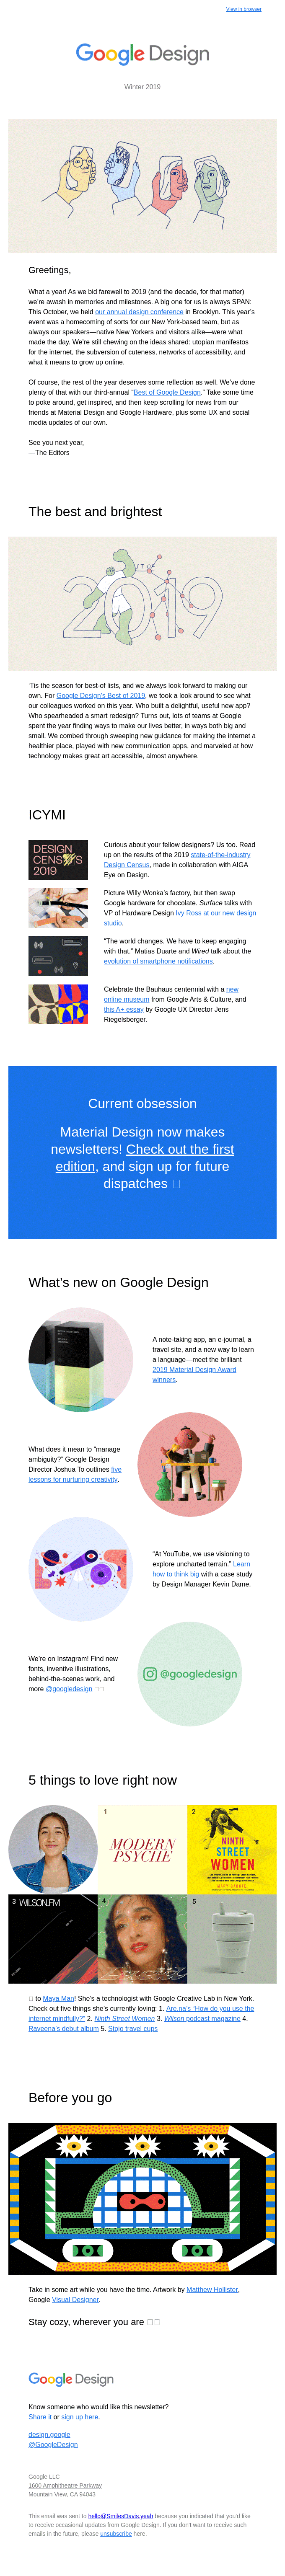  Google Design’s Newsletter Example